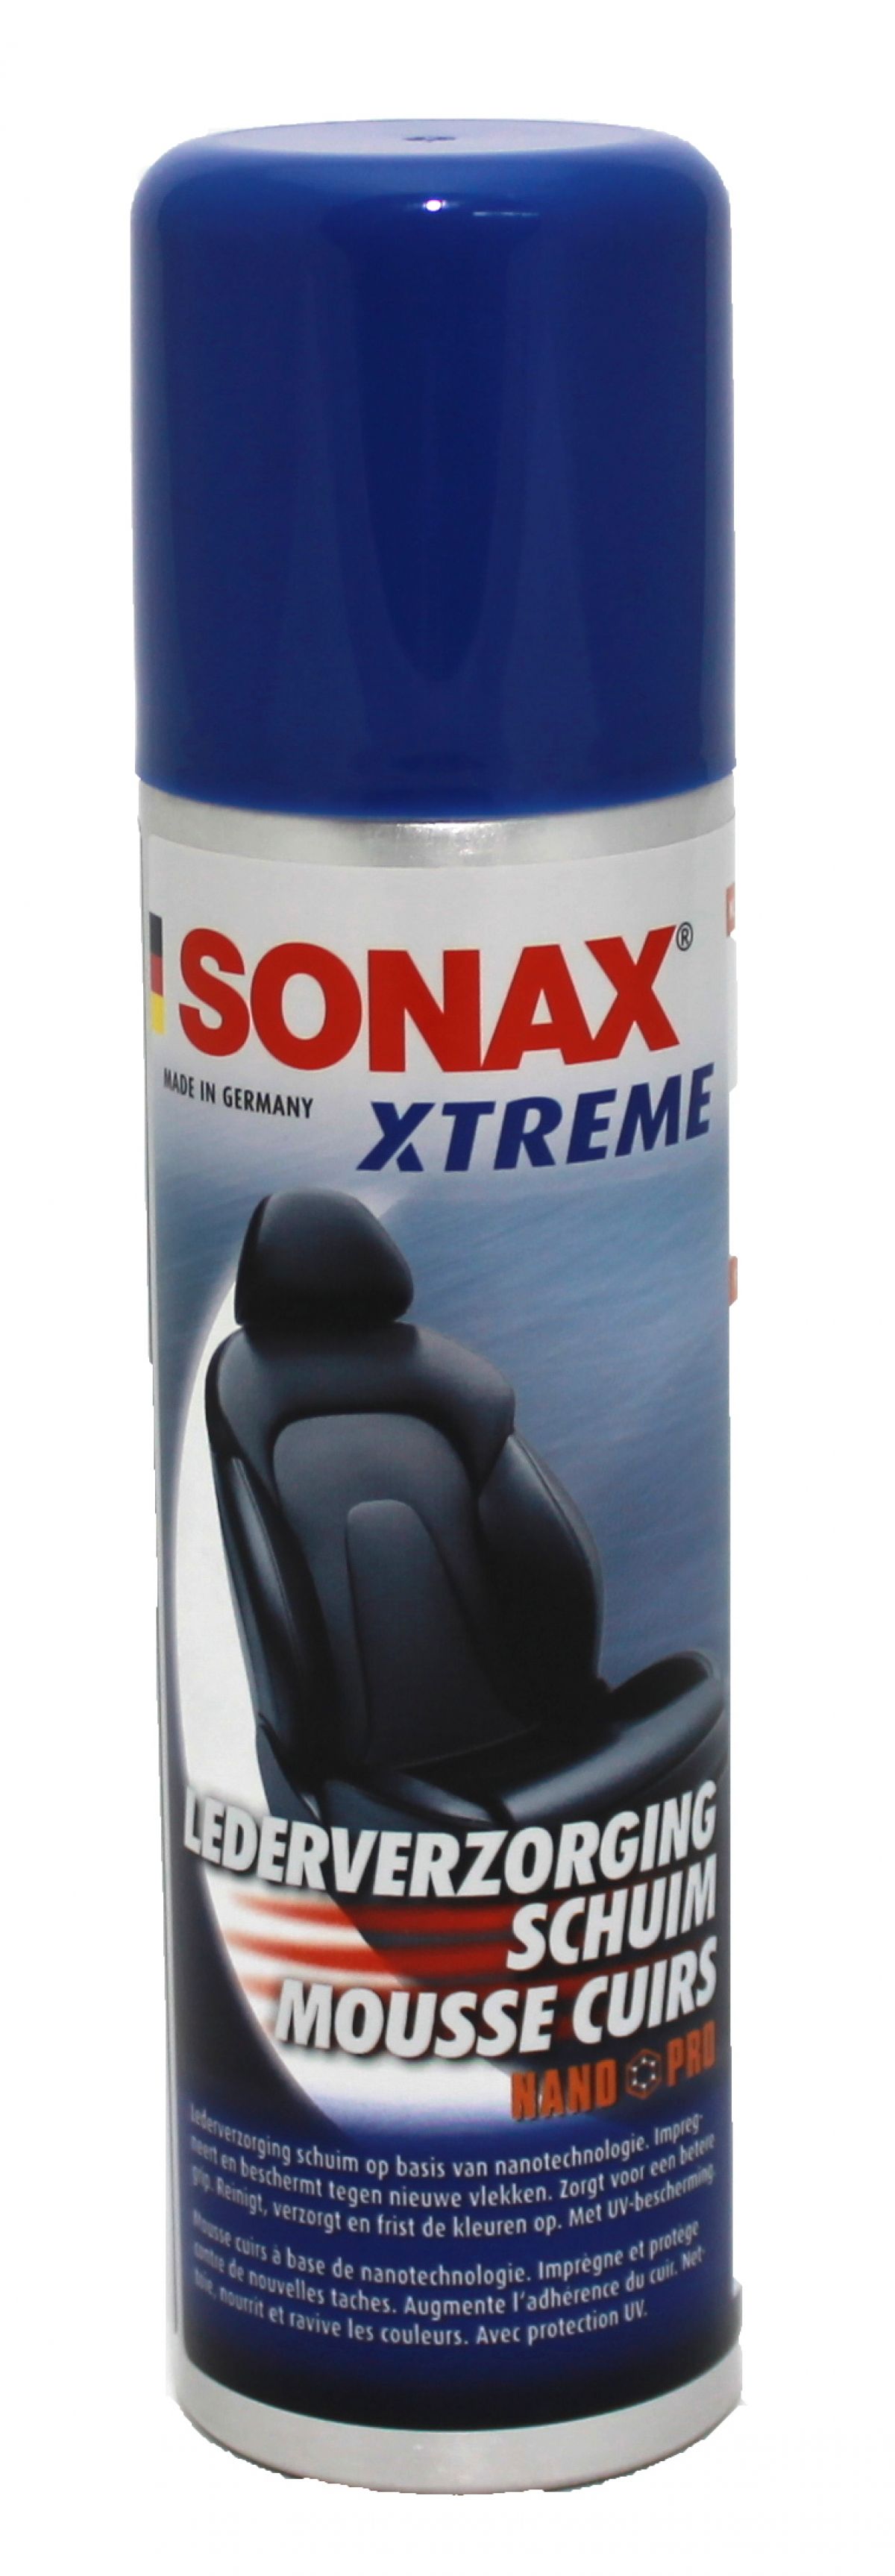 SONAX produit nettoyant pour siège de voiture en cuir